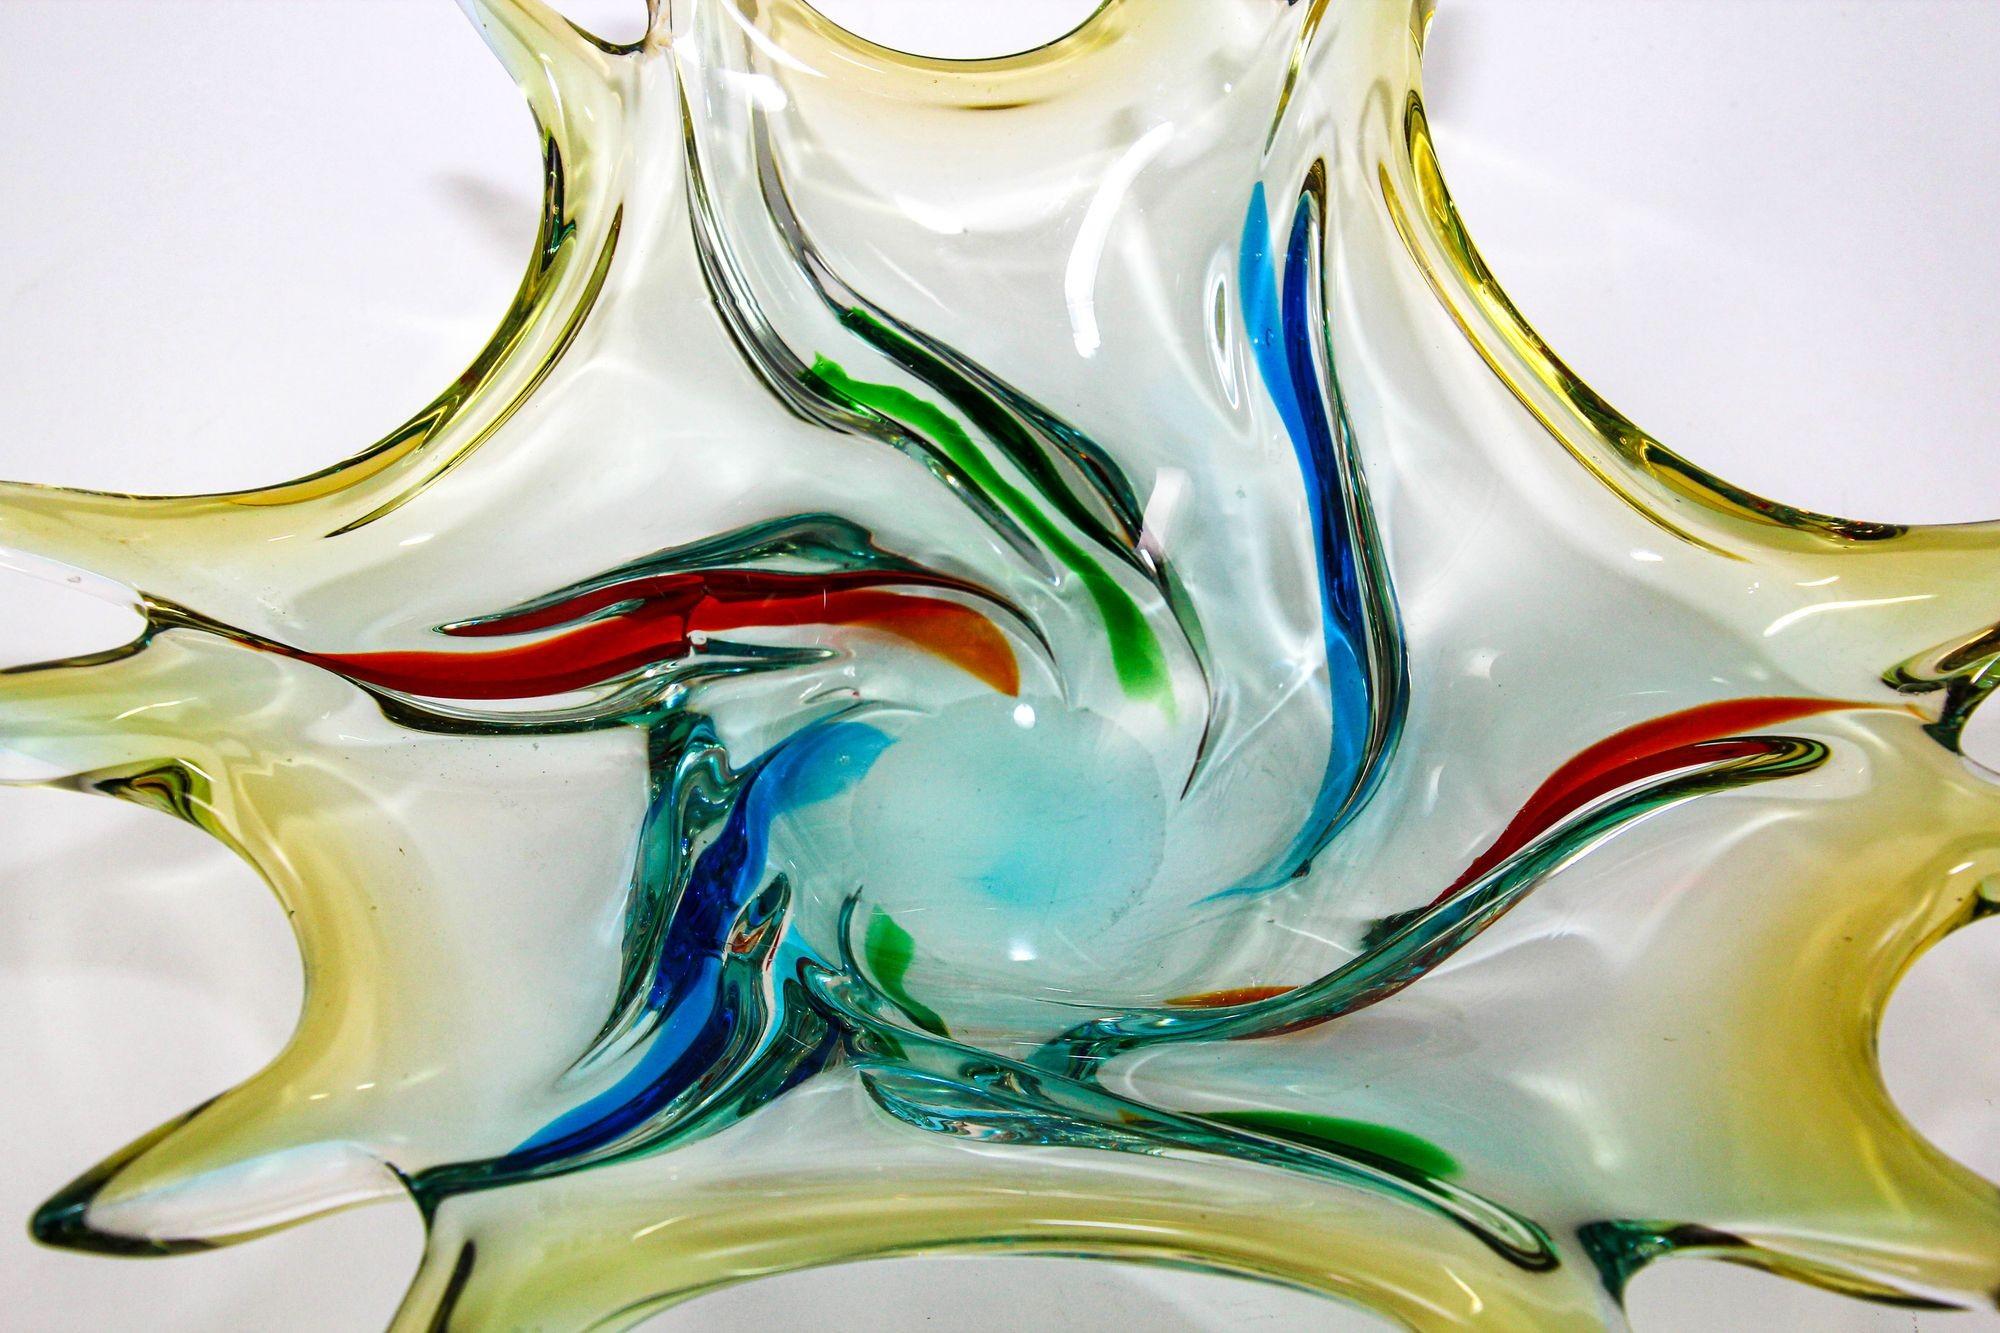 Vintage Sculptural Italian Murano Art Glass Fruit Bowl Centerpiece 1960s.
Coupe à fruits vintage en verre d'art soufflé à la bouche de Murano bleu, vert, rouge et jaune, fabriquée à la main en Italie dans les années 1960.
Bol décoratif moderne et